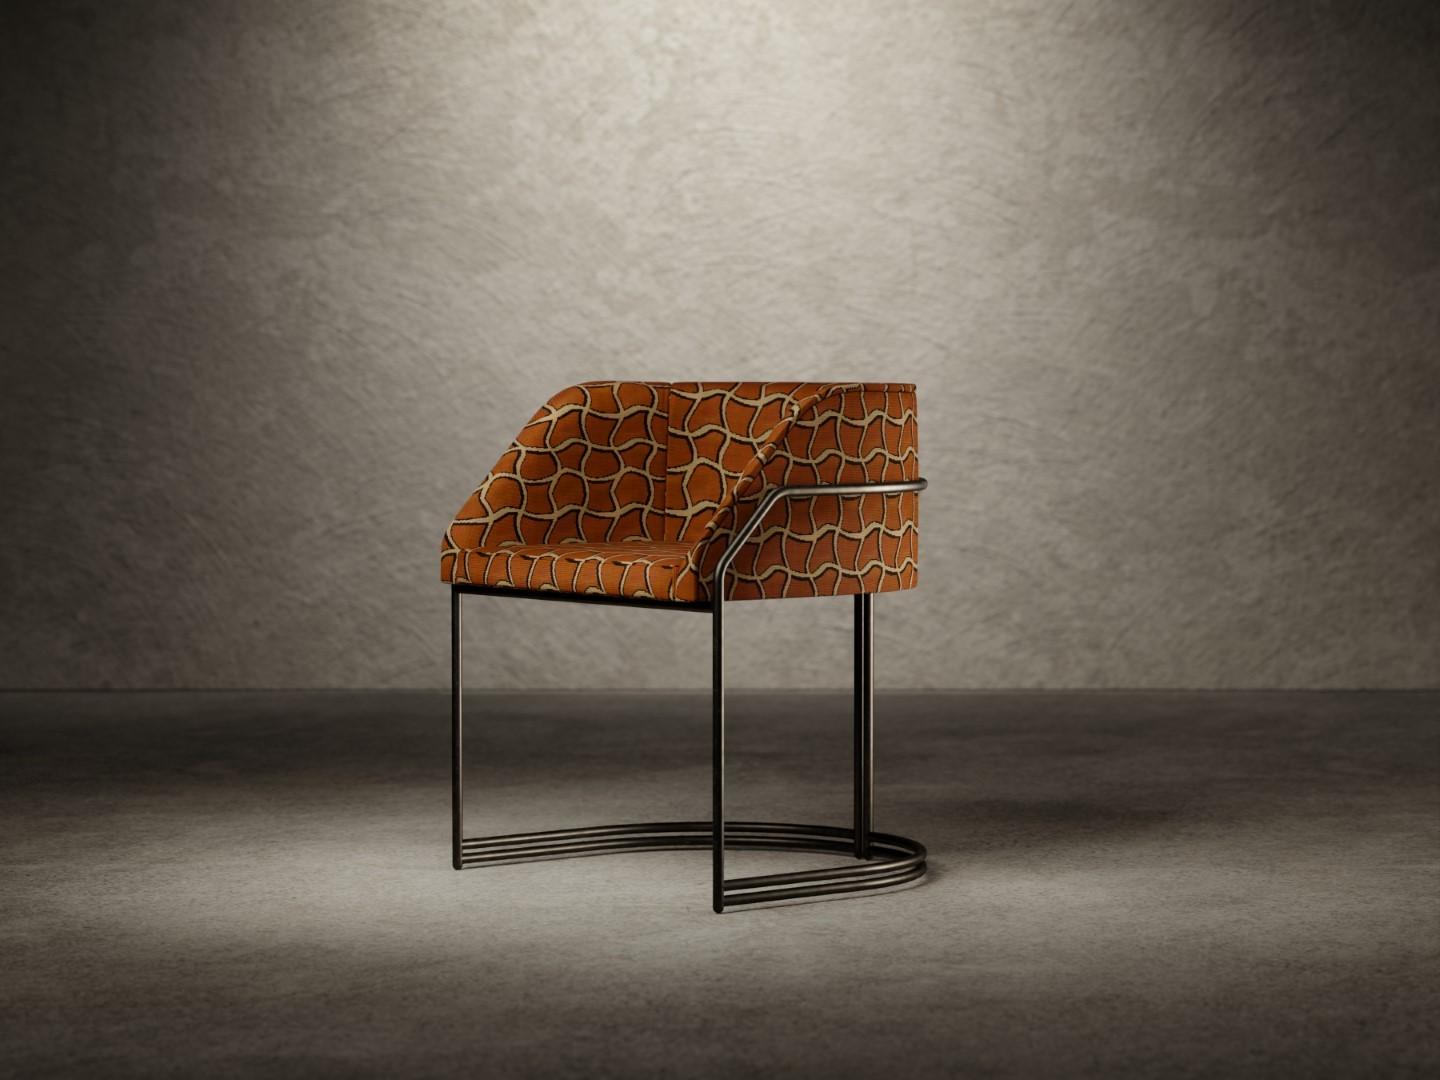 La chaise Déjà Vu est composée d'une coque en bois paddée de mousse de polyuréthane de différentes densités et finie par une couche supérieure en fibre acrylique. 
L'assise est disponible entièrement recouverte de tissu ou de cuir, tandis que le